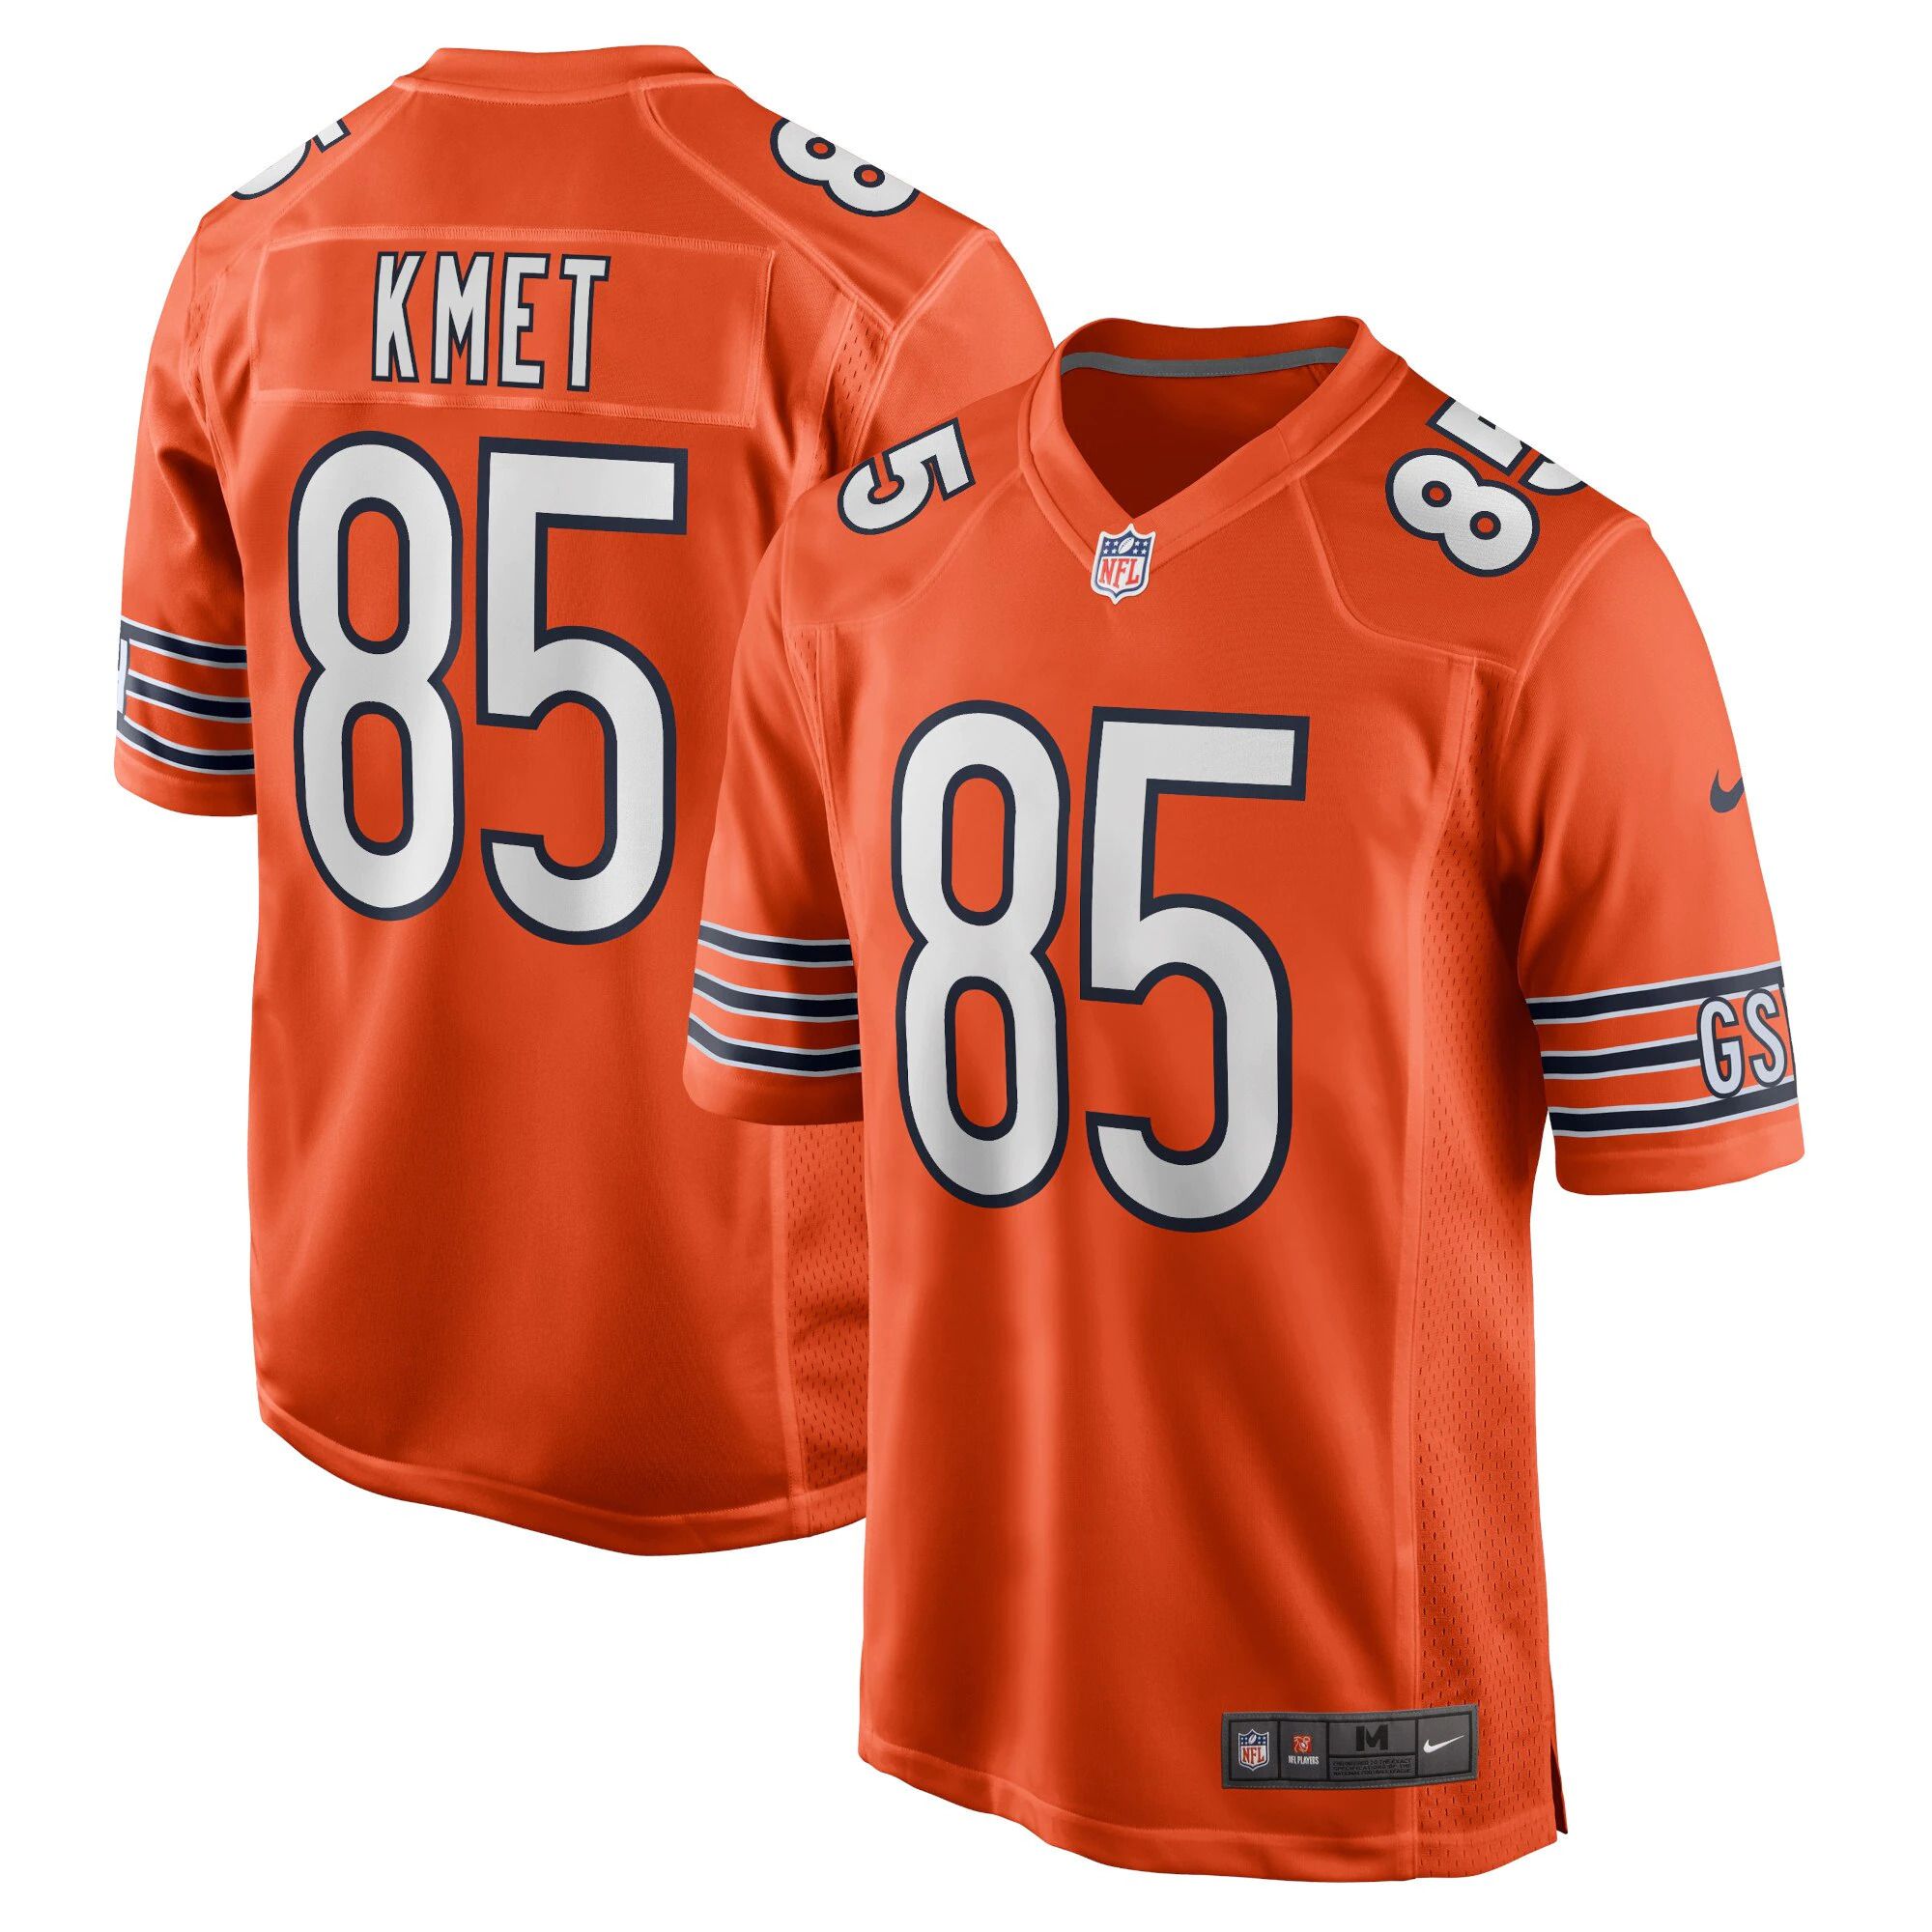 Men Chicago Bears #85 Cole Kmet Nike Orange Player Game NFL Jersey->chicago bears->NFL Jersey